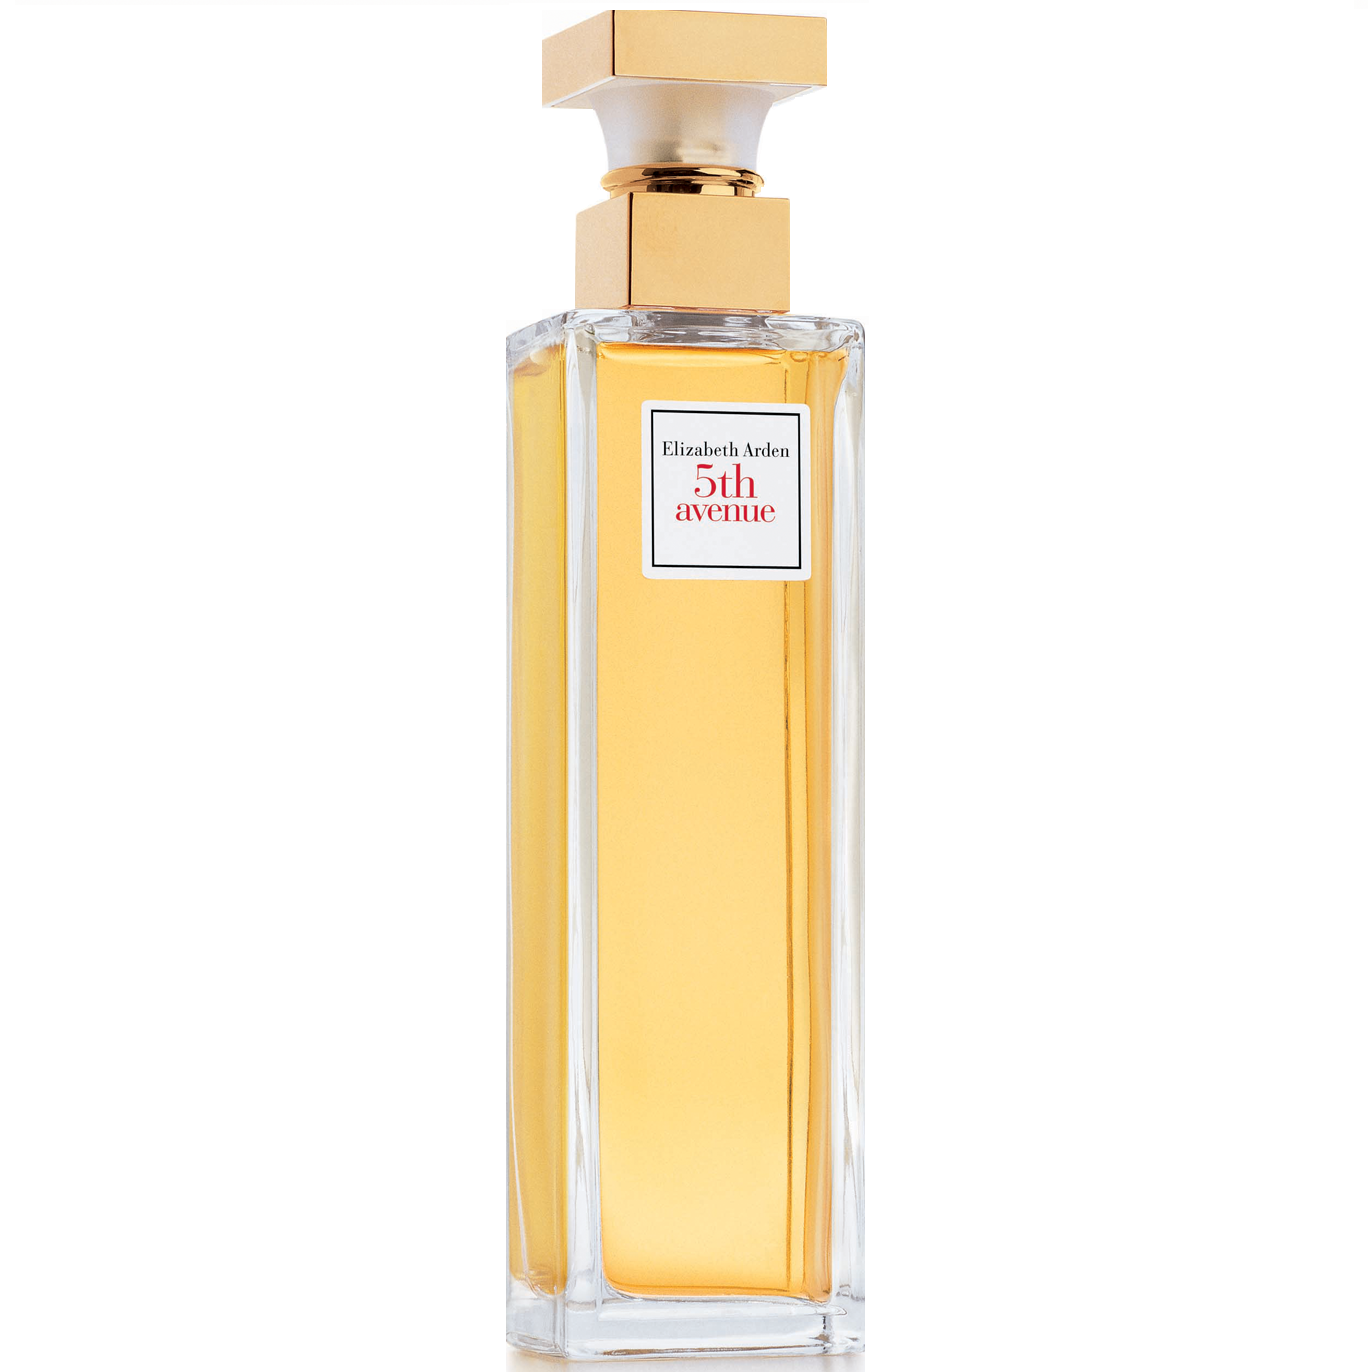 Холодные ароматы духов для женщин: список и описание лучших запахов такого парфюма